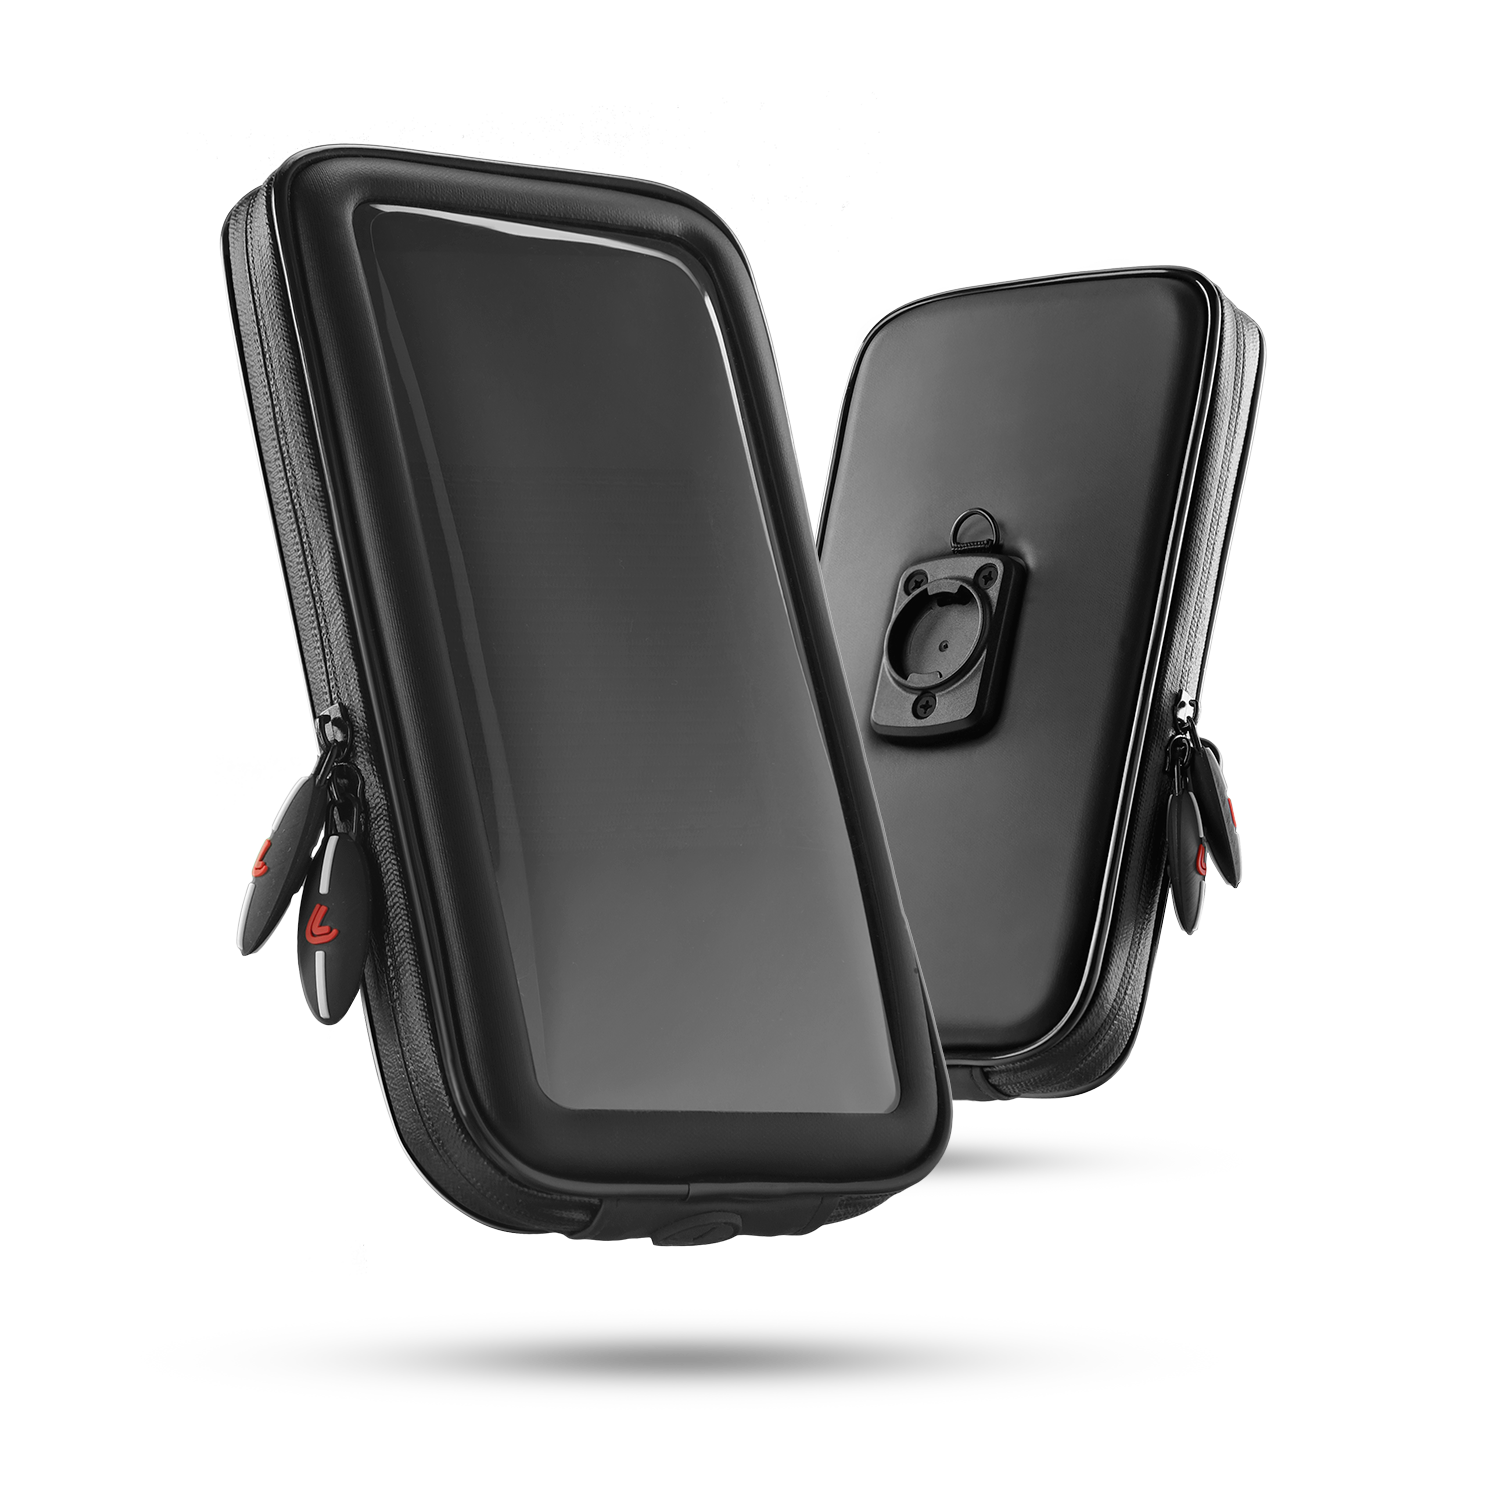 Supporto impermeabile porta cellulare telefono per la moto bici borsa  universale - NTL Nuova Tecnologia